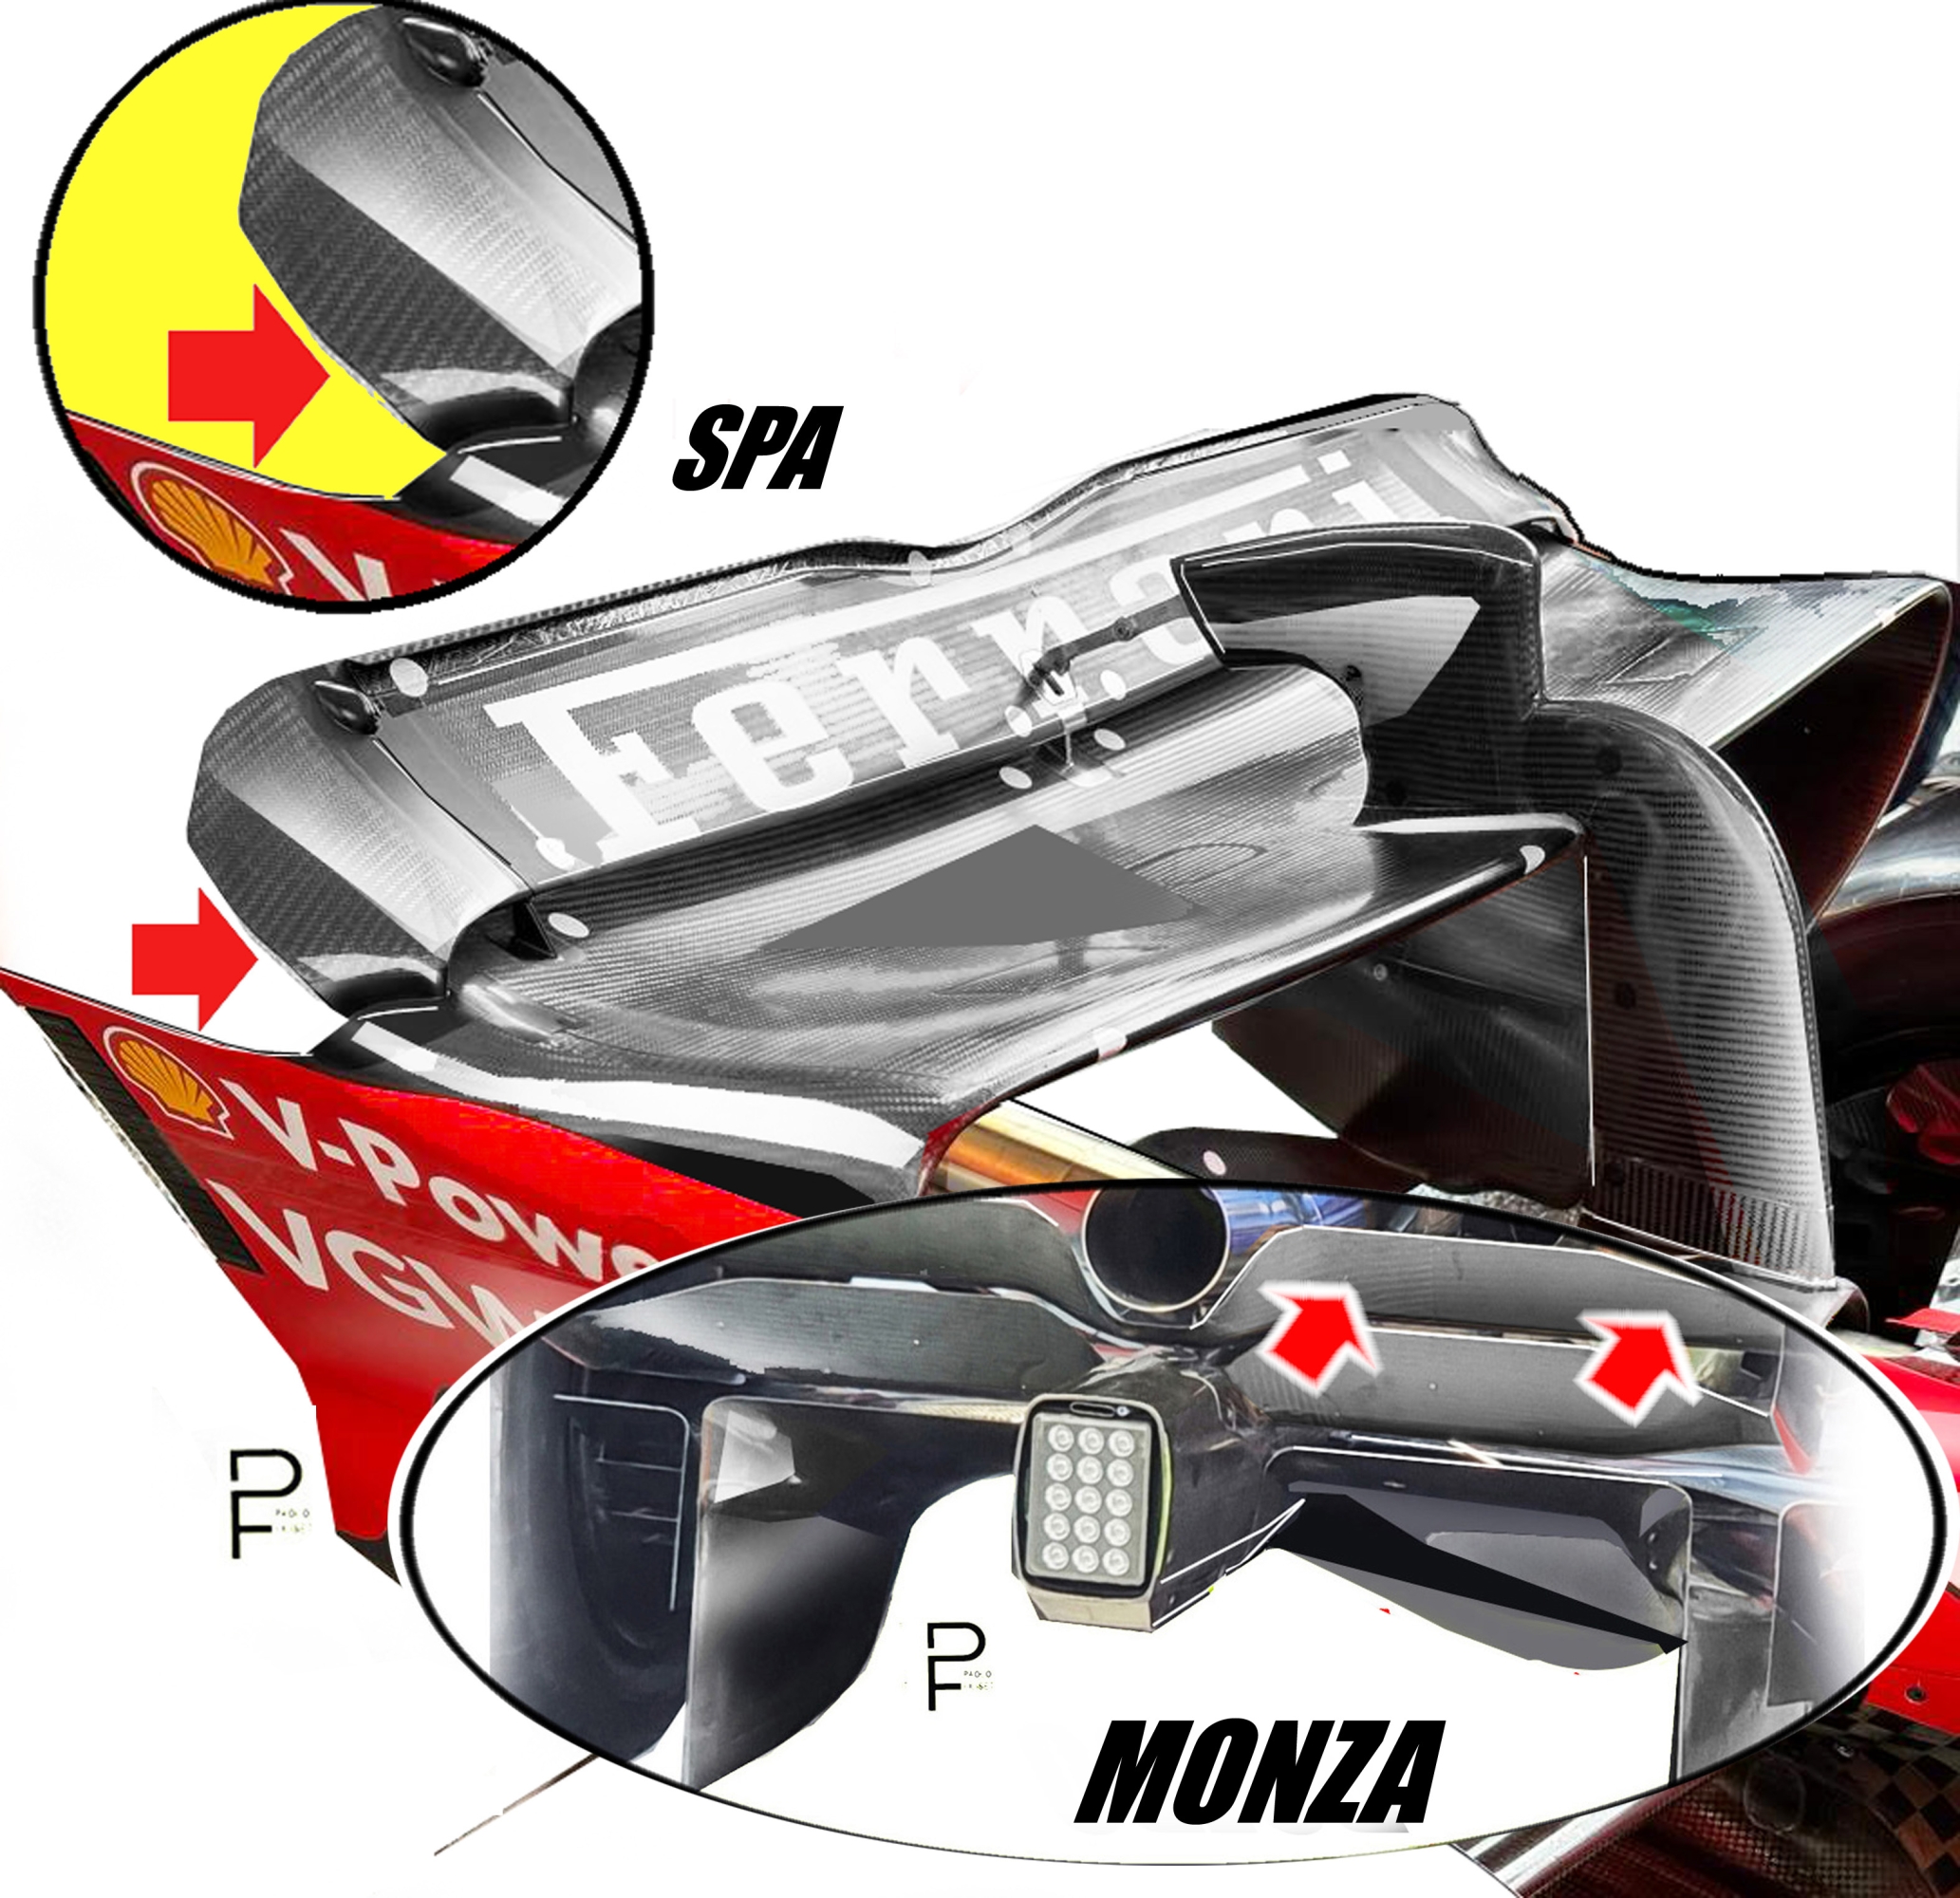 Da Spa a Monza Prevista una nuova versione di ali dal profilo estremizzato rispetto a quelle viste a Spa, con una diversa conformazione della “beam wing” inferiore FILISETTI